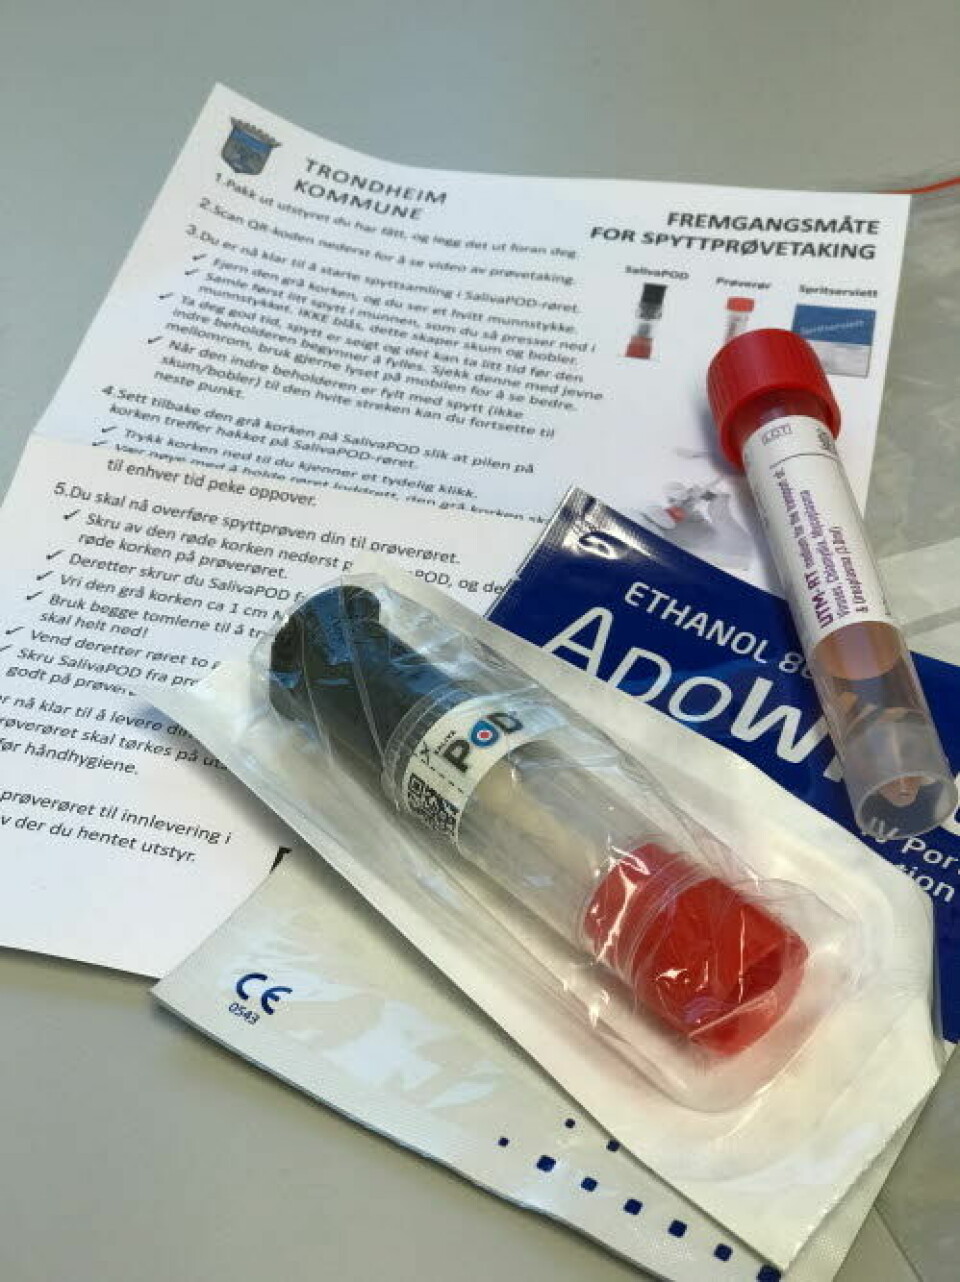 Spytt-testene som benyttes ved St. Olavs hospital foregår ved at du fyller 1,5-2 ml spytt ned i et såkalt salivapodkammer.

            
                Foto: Guro Kulset Merakerås